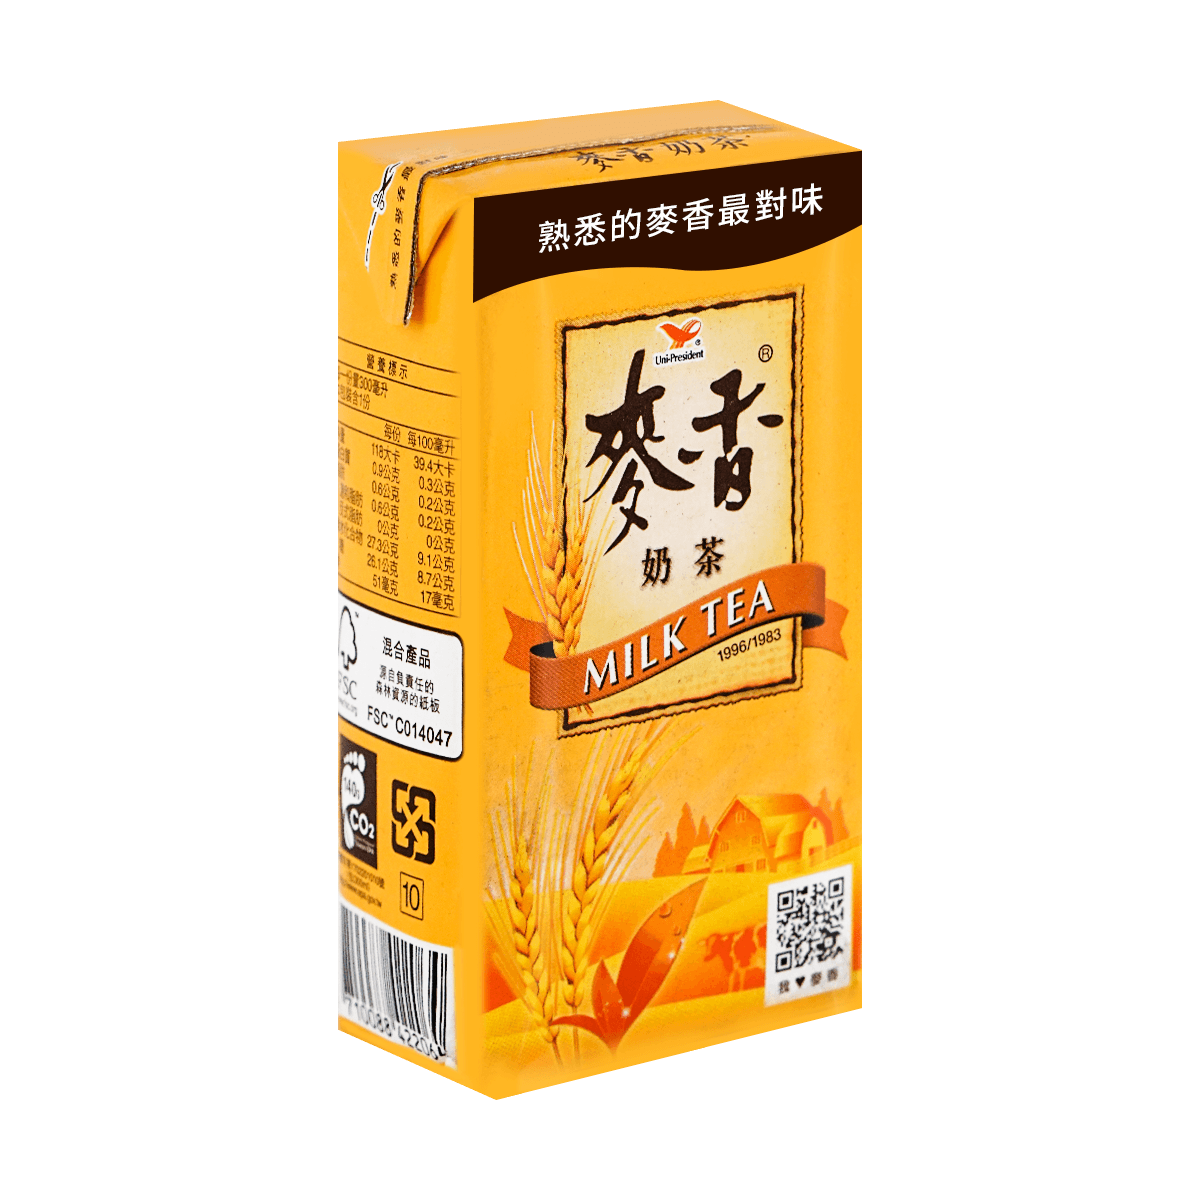 台湾统一 麦香奶茶 300ml 怎么样 - 亚米网